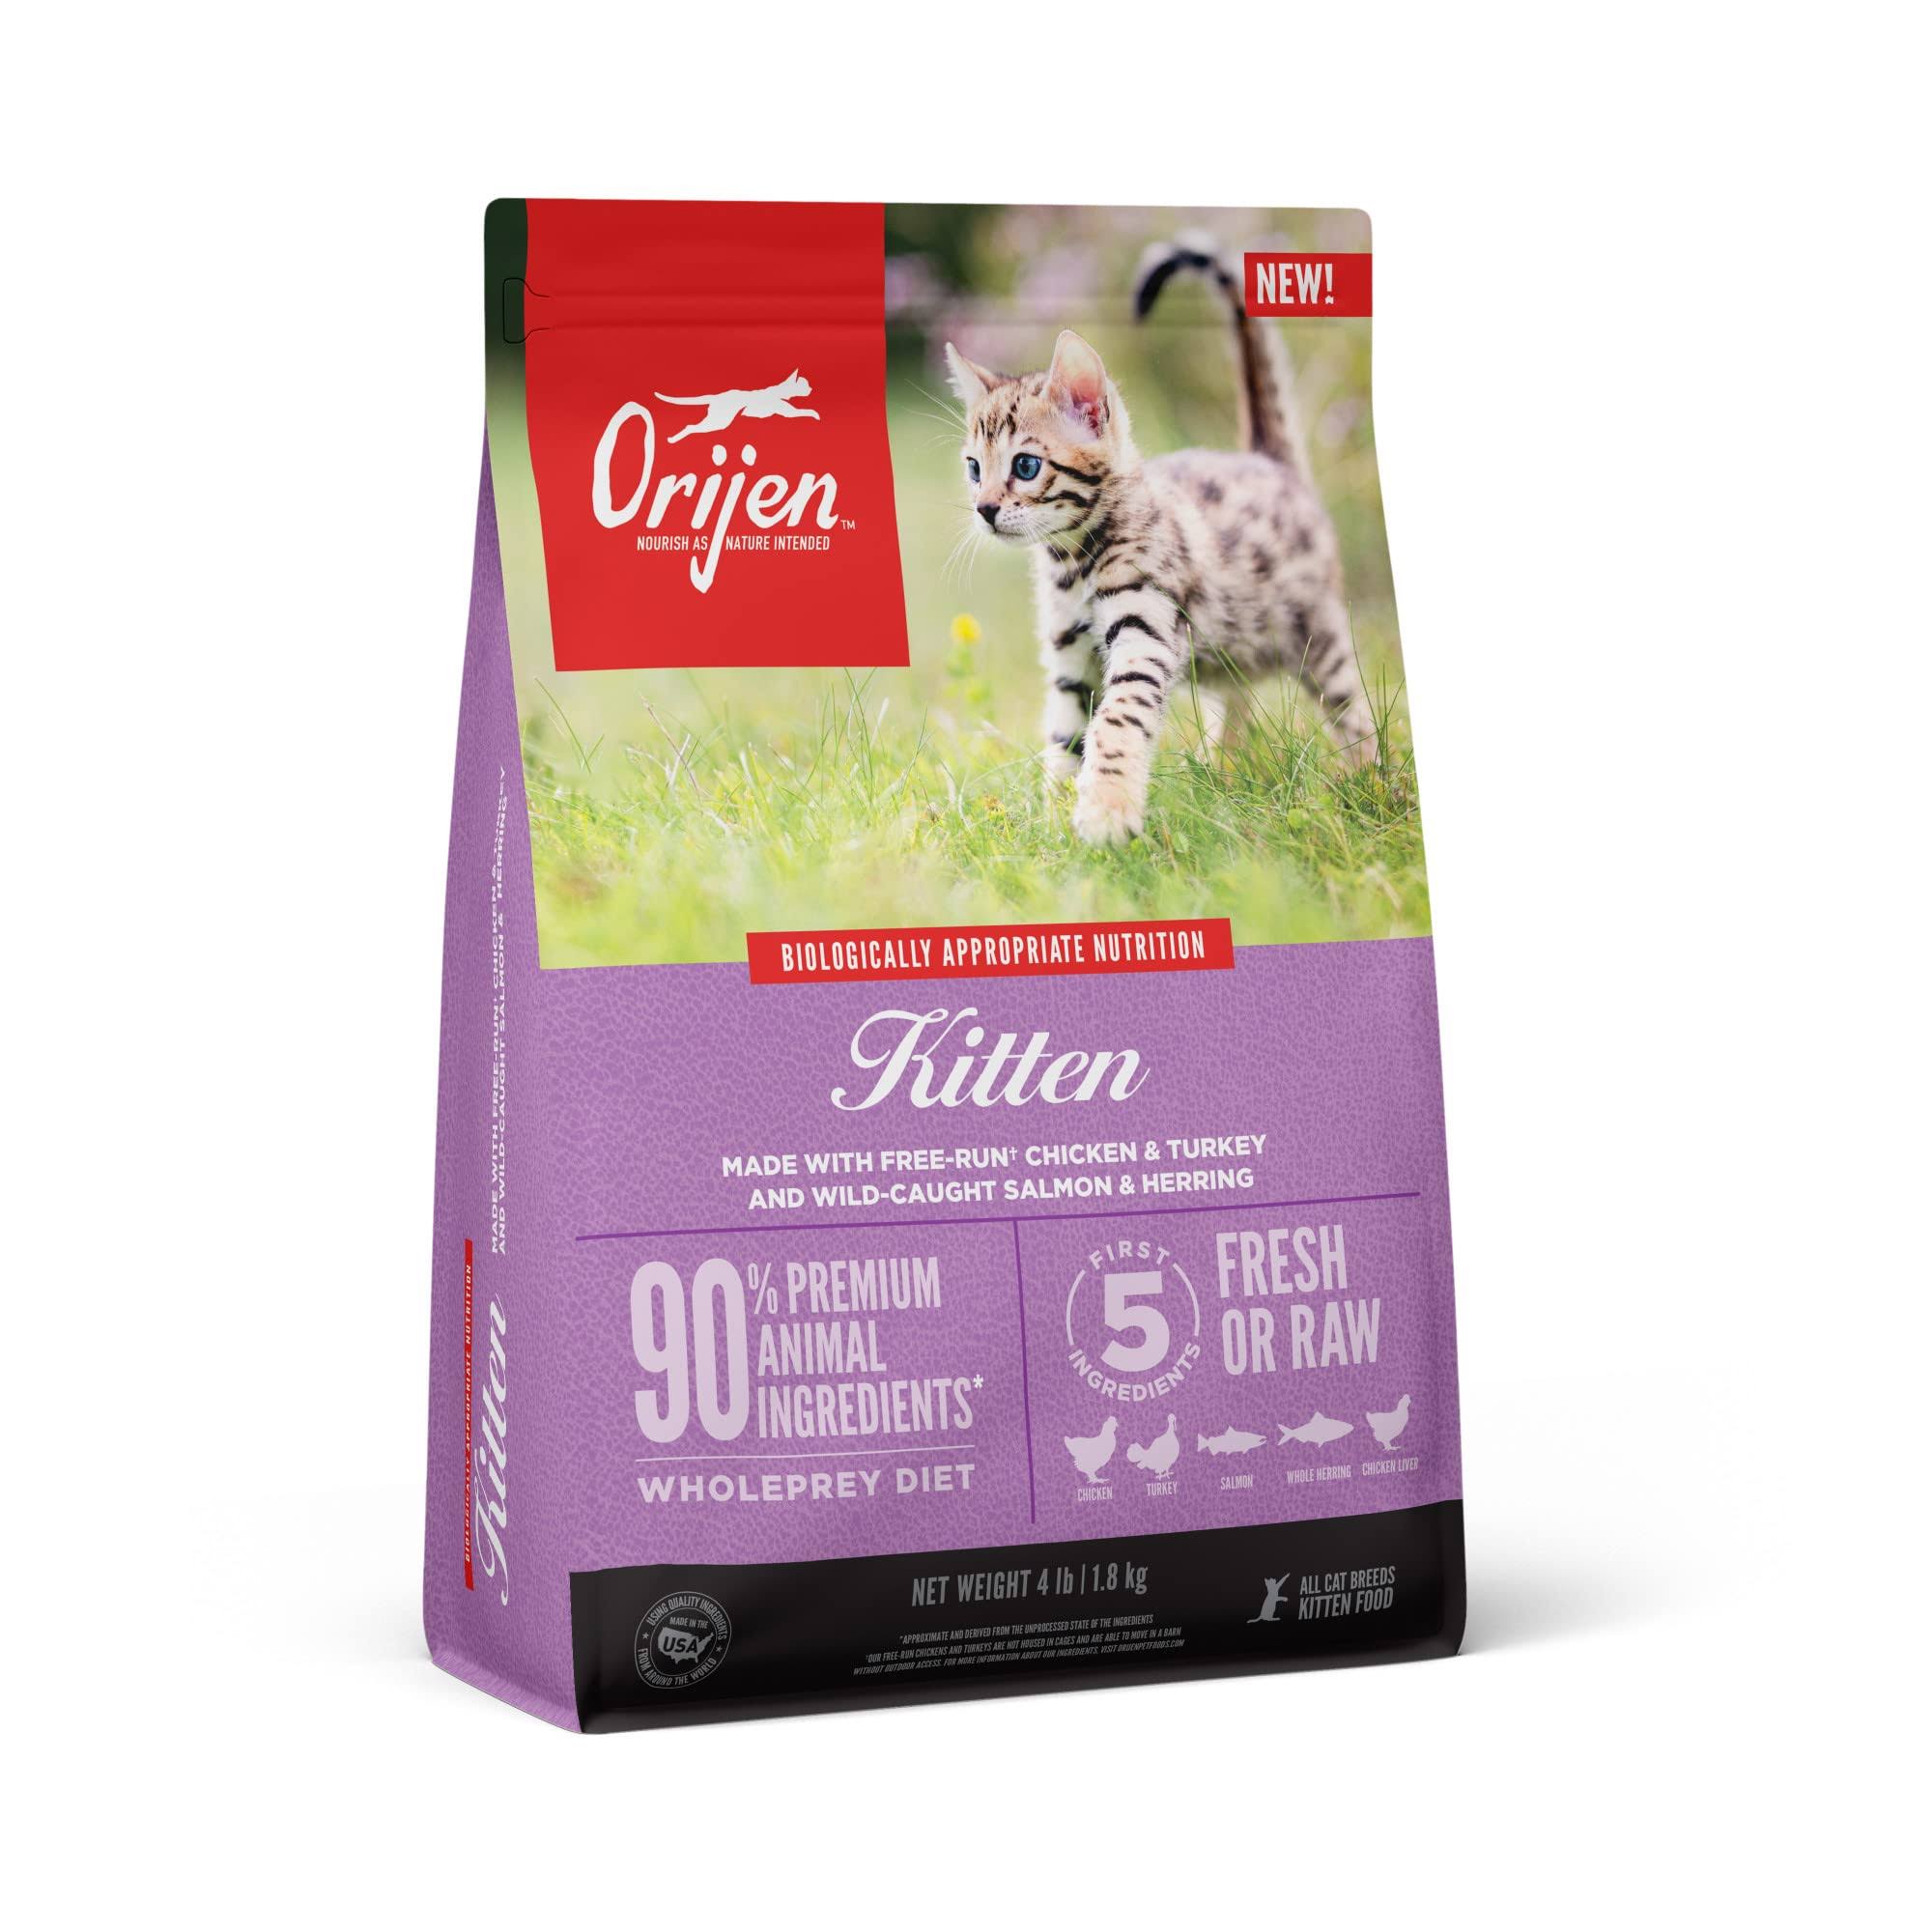 Orijen Kitten Dry Cat Food, 4-Lbs.